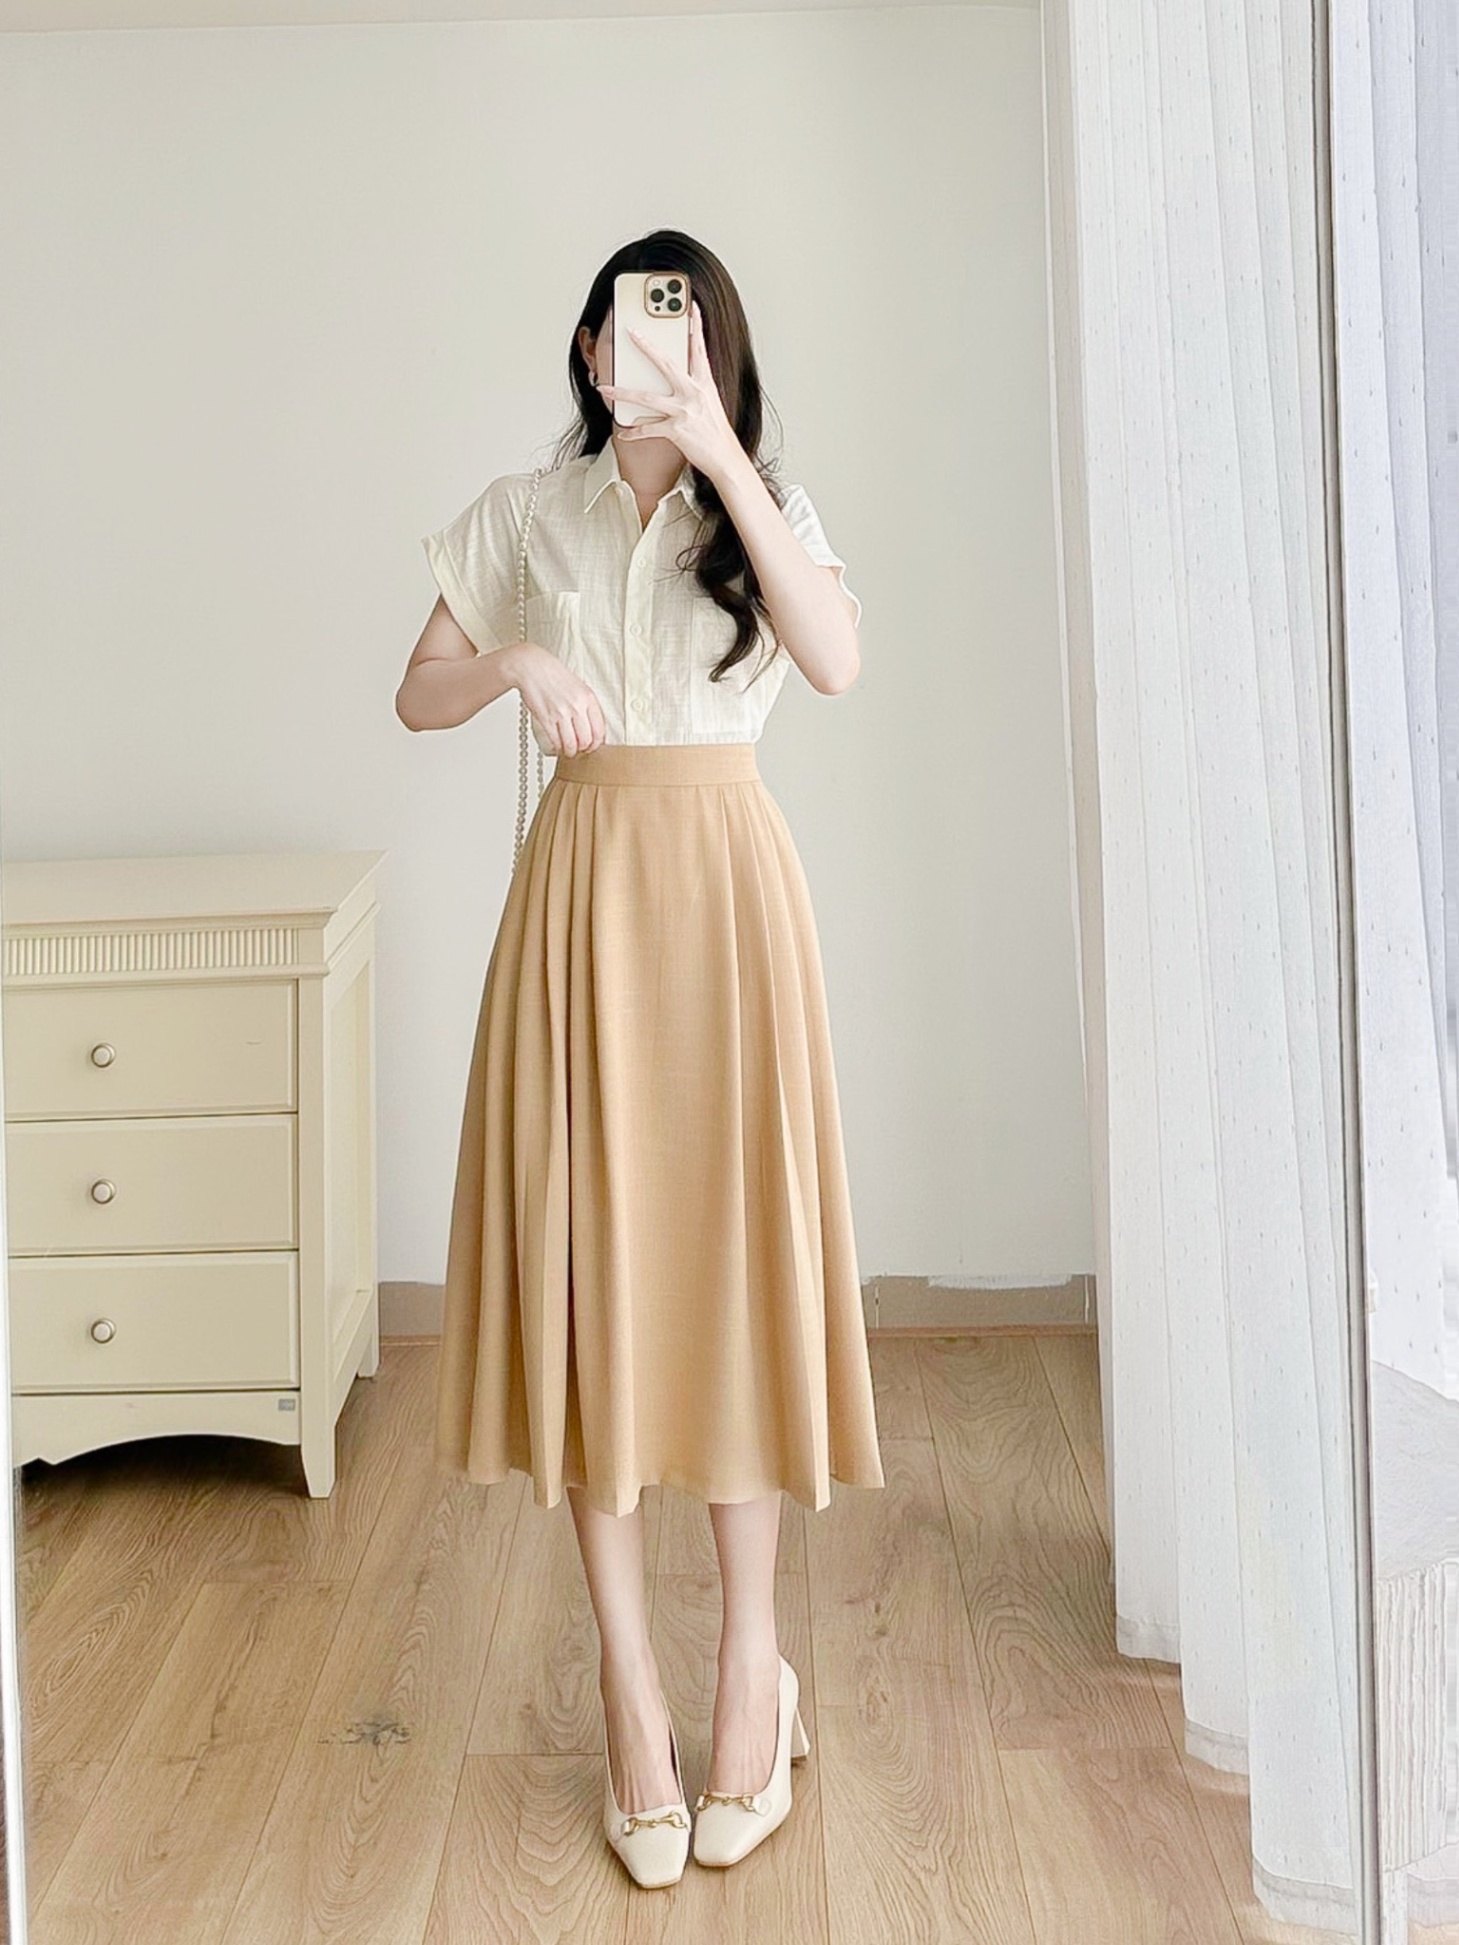 ZENA Fashion - Chân váy nhung xếp ly dáng dài kèm đau Shop... | Facebook